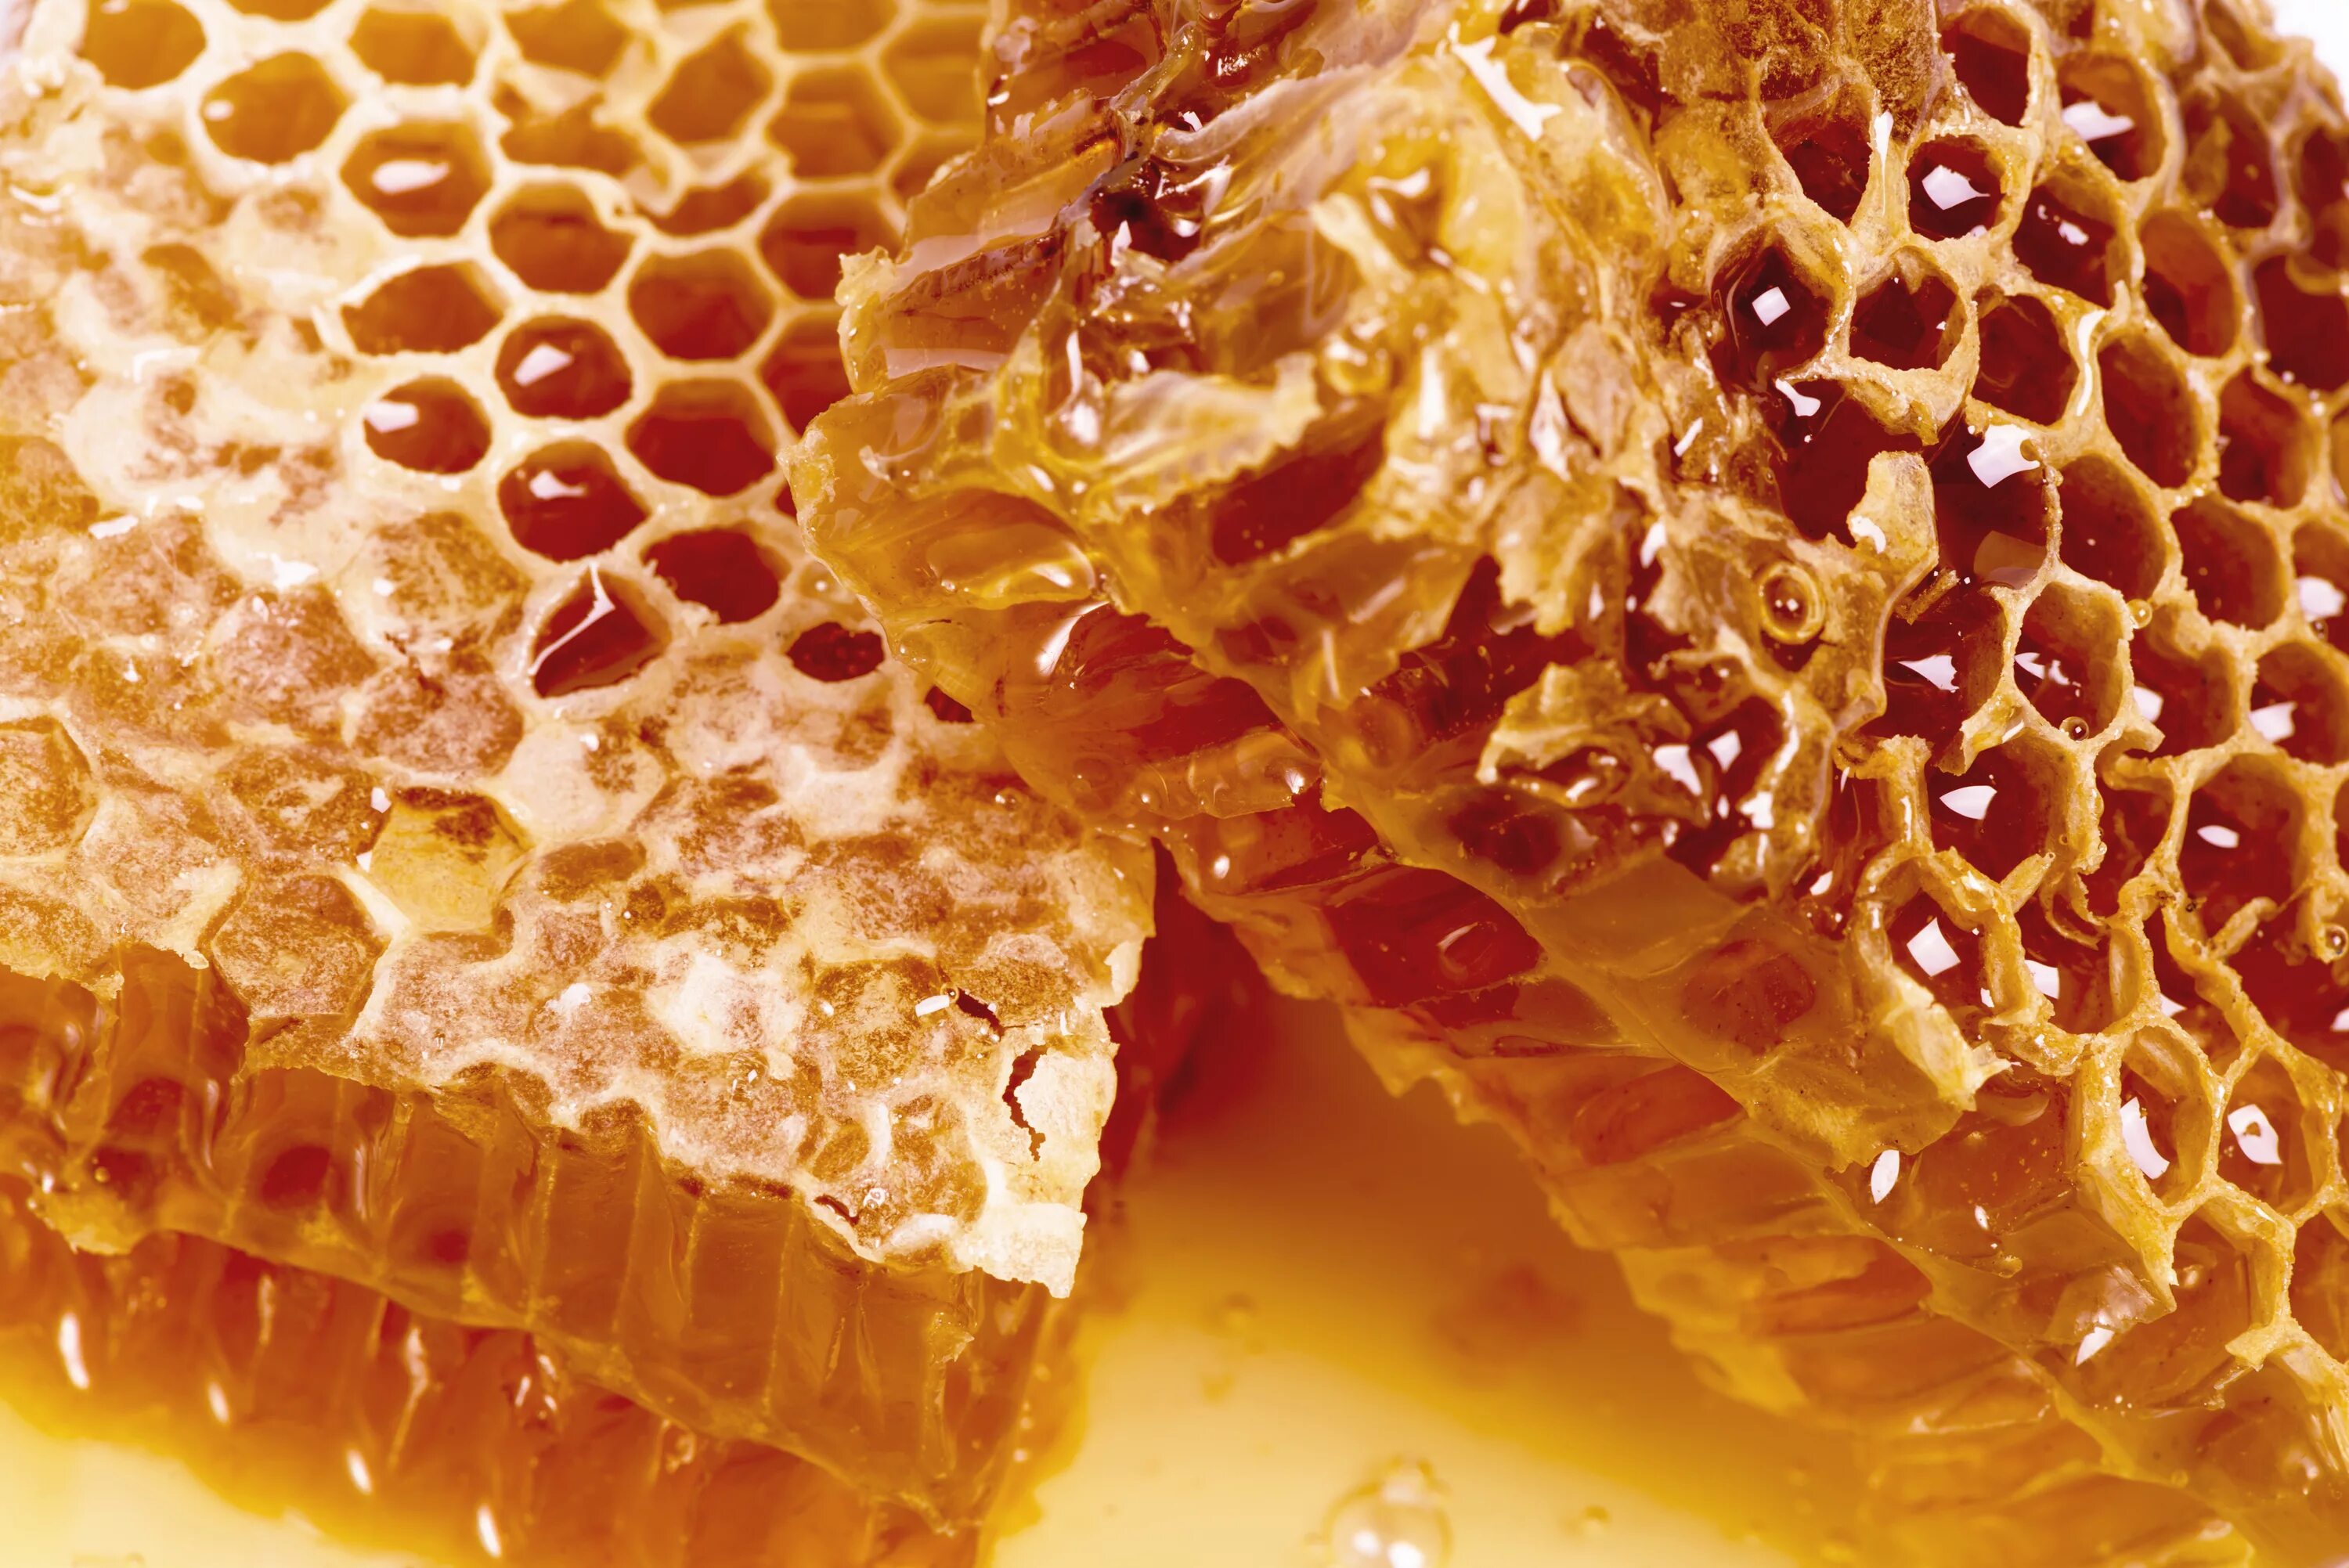 Honey медовый. Мёд в сотах. Соты пчелиные. Пчелиные соты с медом. Пчелиный воск.